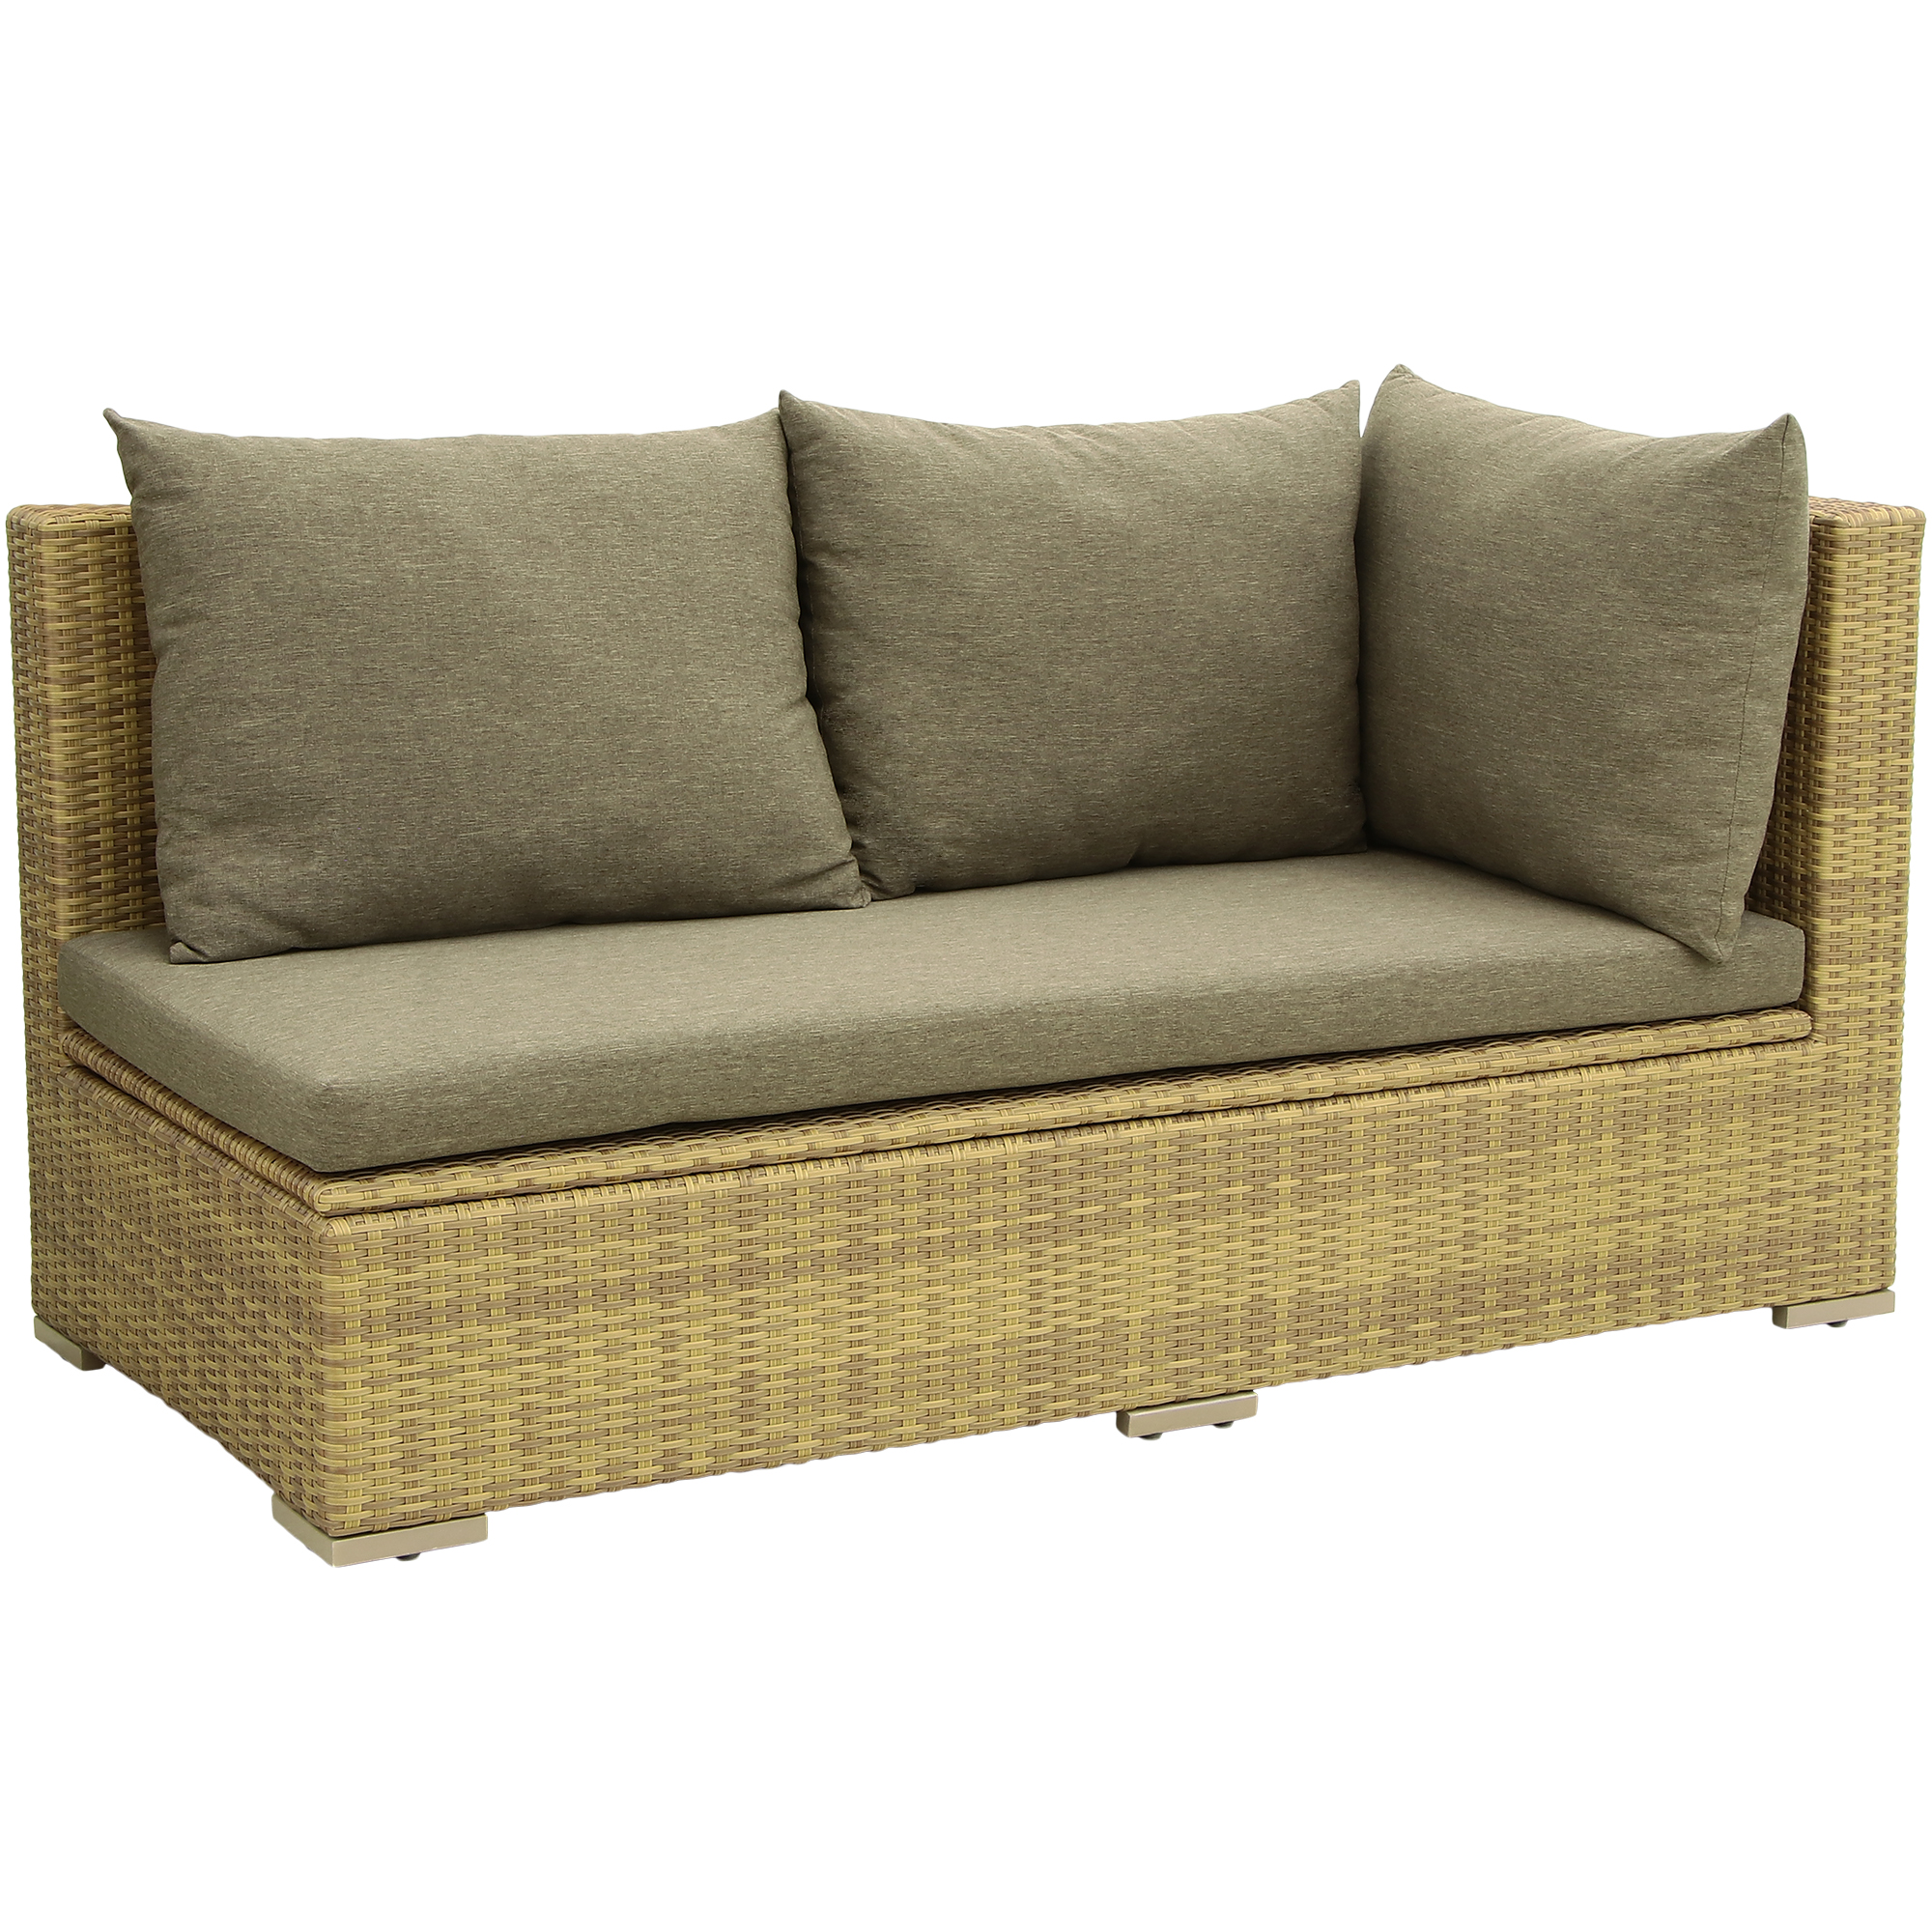 Комплект мебели Ronica Le Montat 3 предмета, цвет коричневый, размер 85х180х89 / 85х182х89 - фото 15